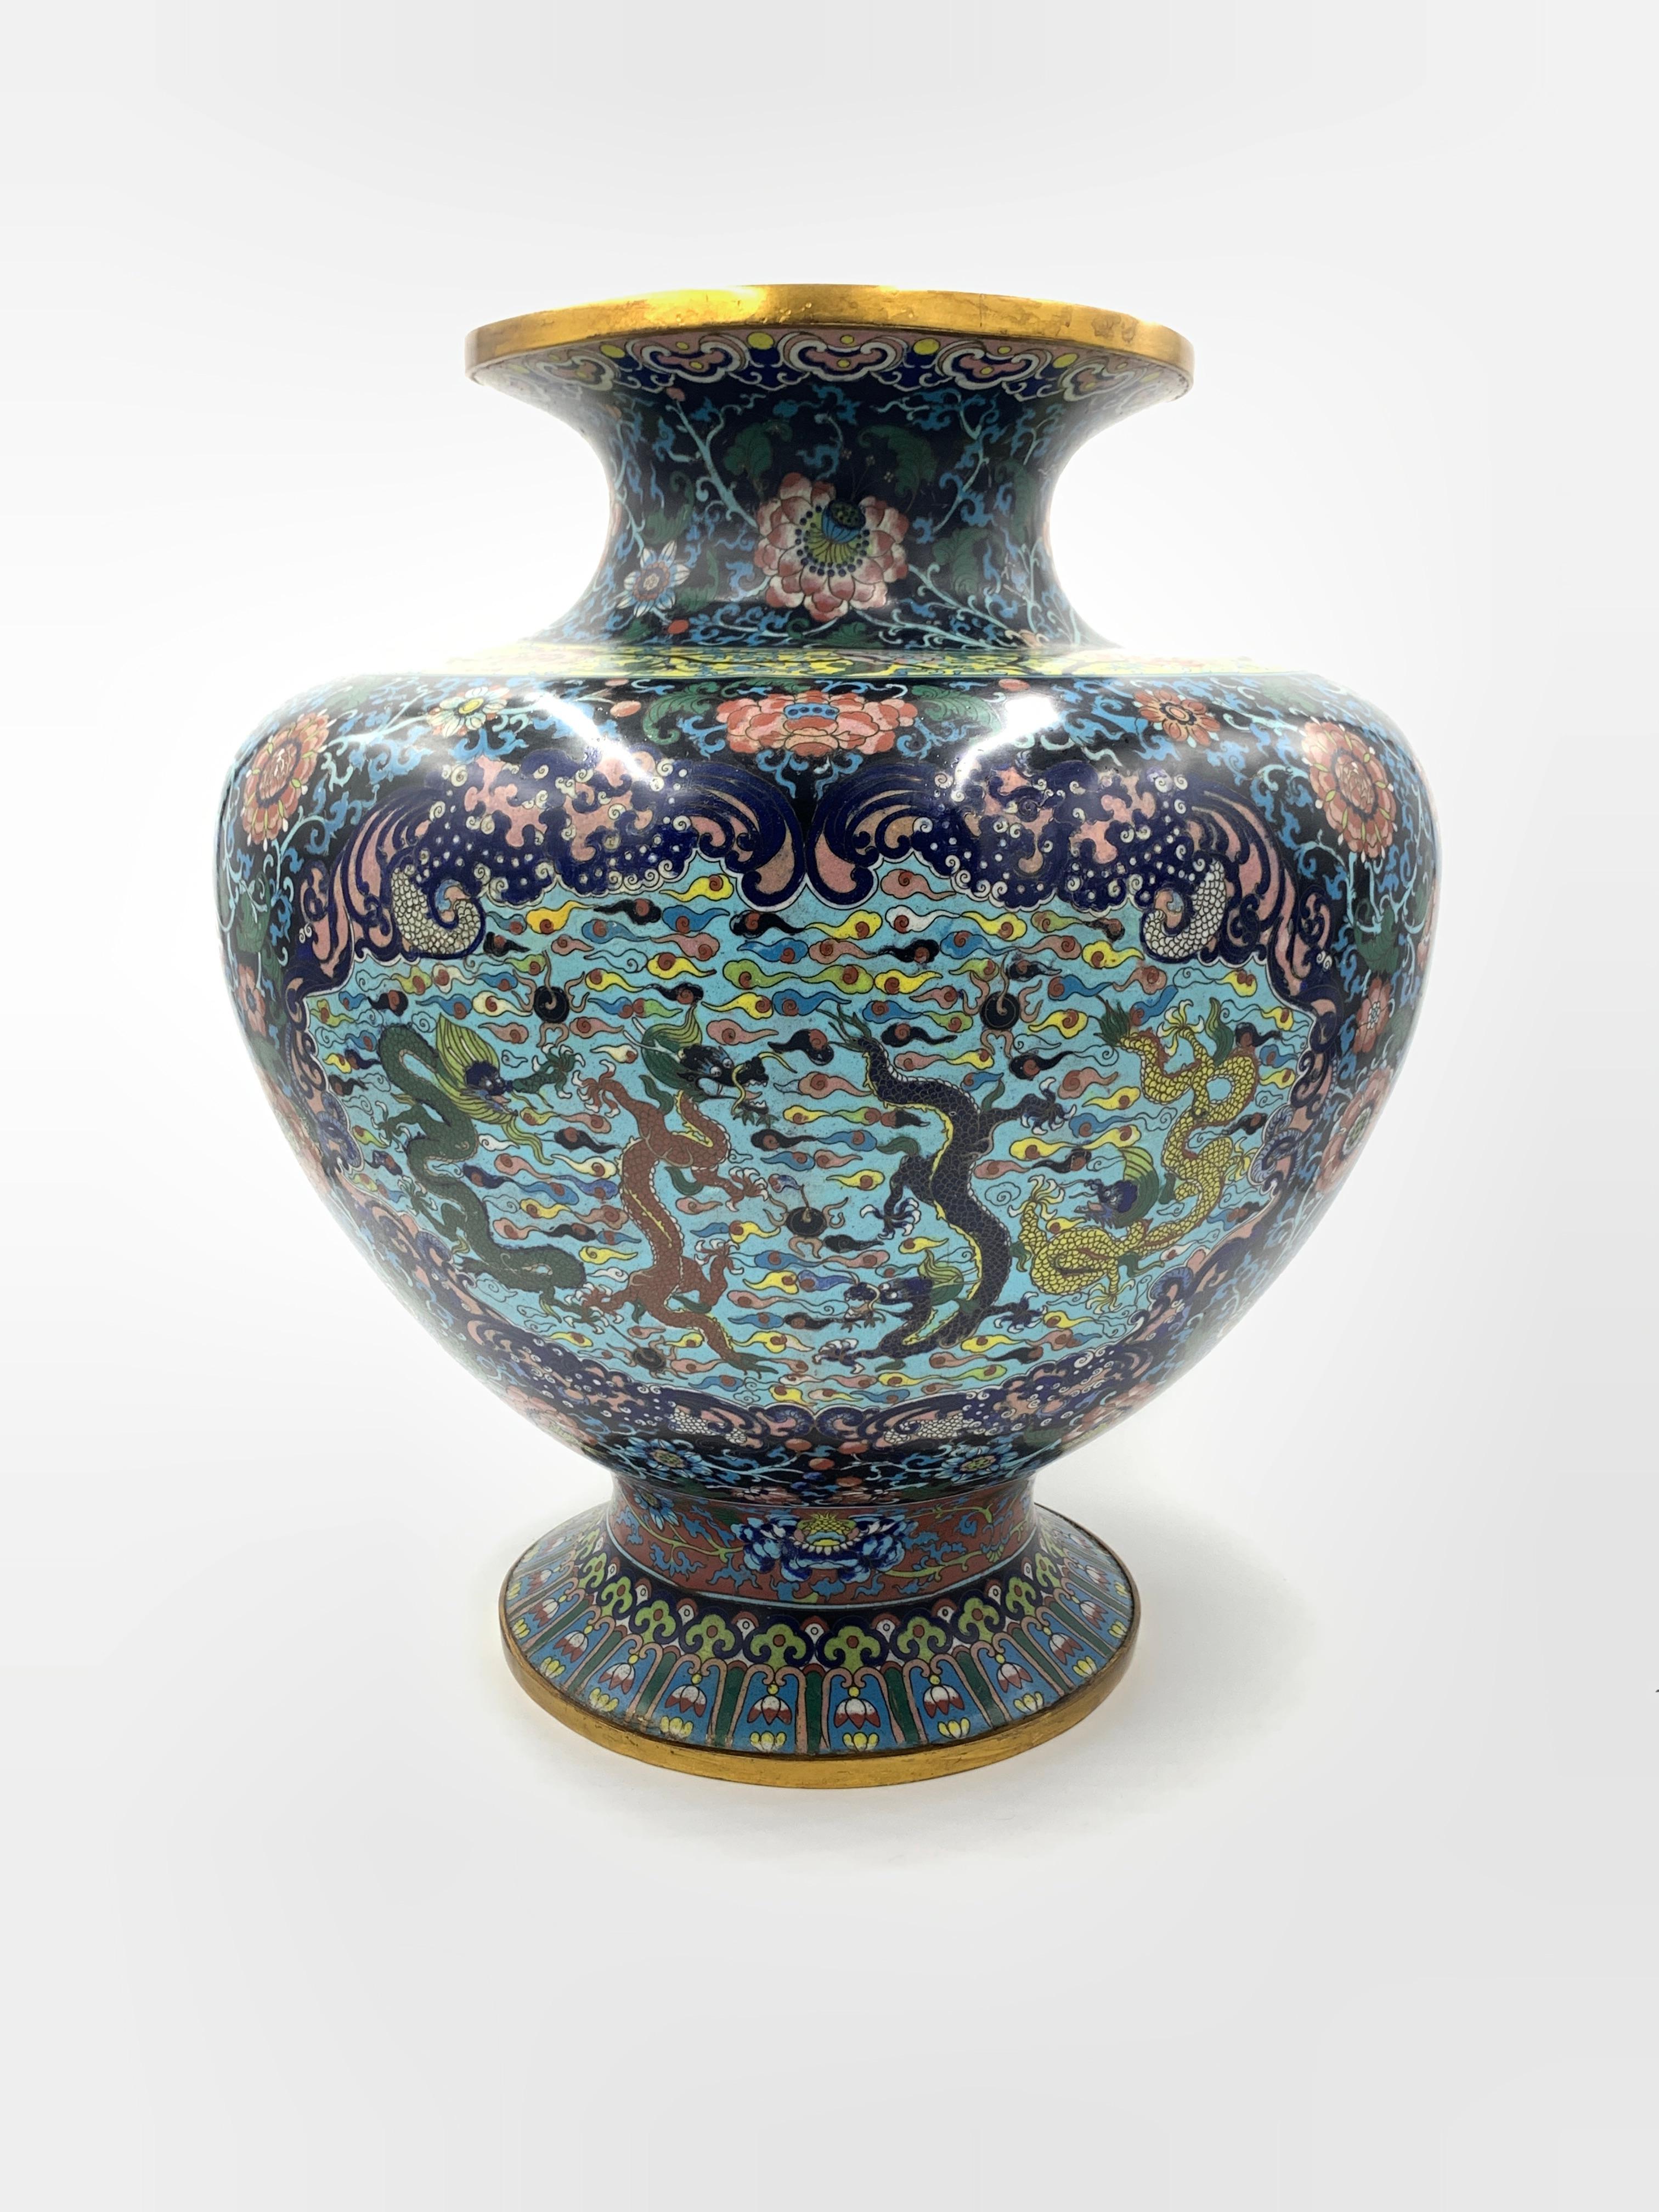 Diese chinesische Vase ist aus Messing gefertigt und mit einem schönen Cloisonné-Blumenmuster aus Emaille versehen. Die elegante Vase steht auf einem schmalen runden Sockel mit einem kurzen Trichterhals. Die Cloisonné-Blumen- und Blattmuster sind